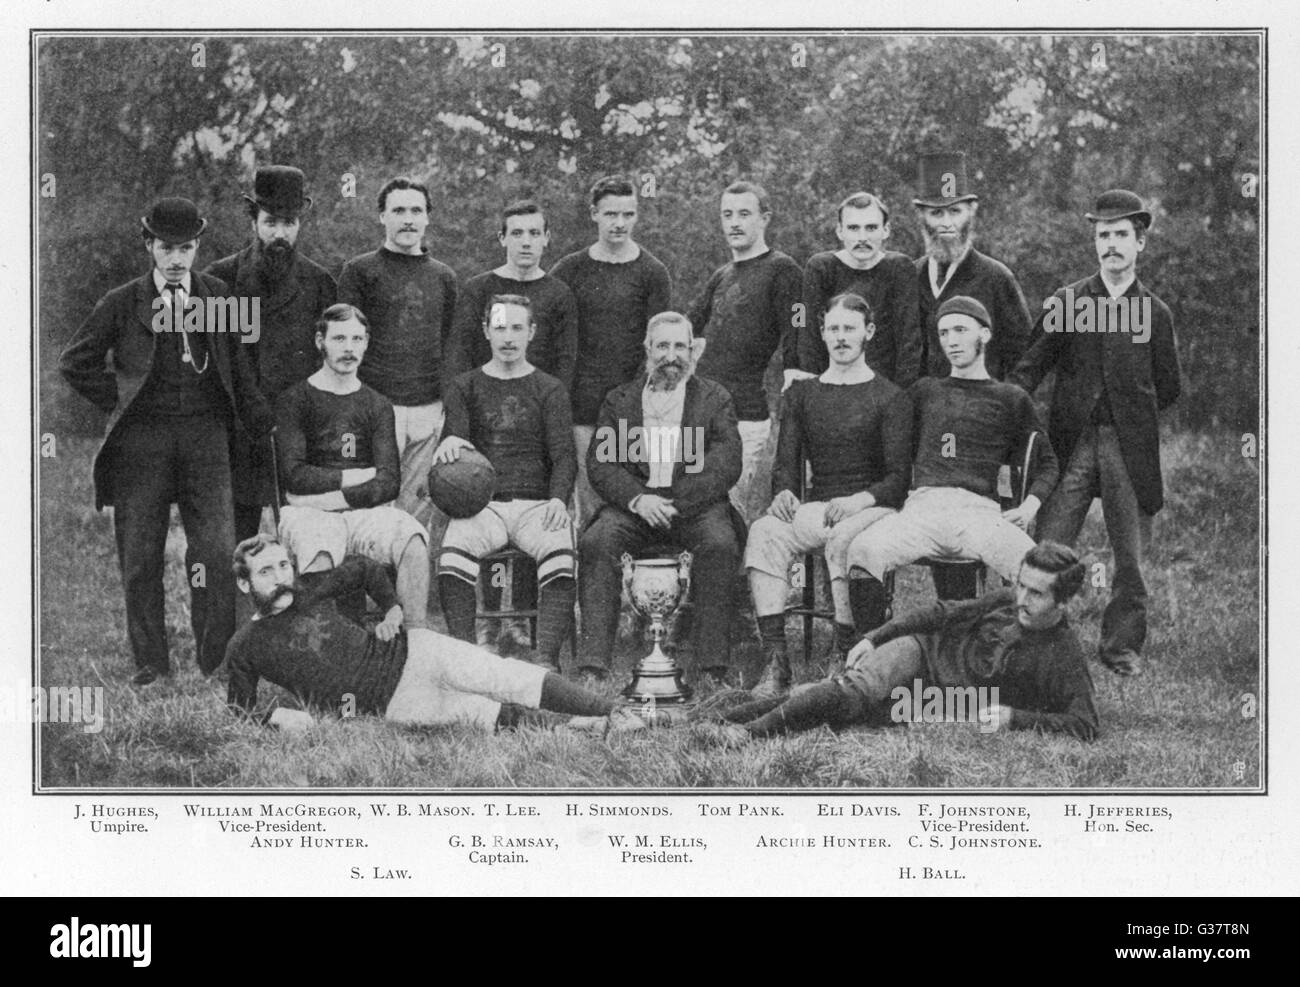 Une équipe d'Aston Villa début photo. Date : 1879 Banque D'Images